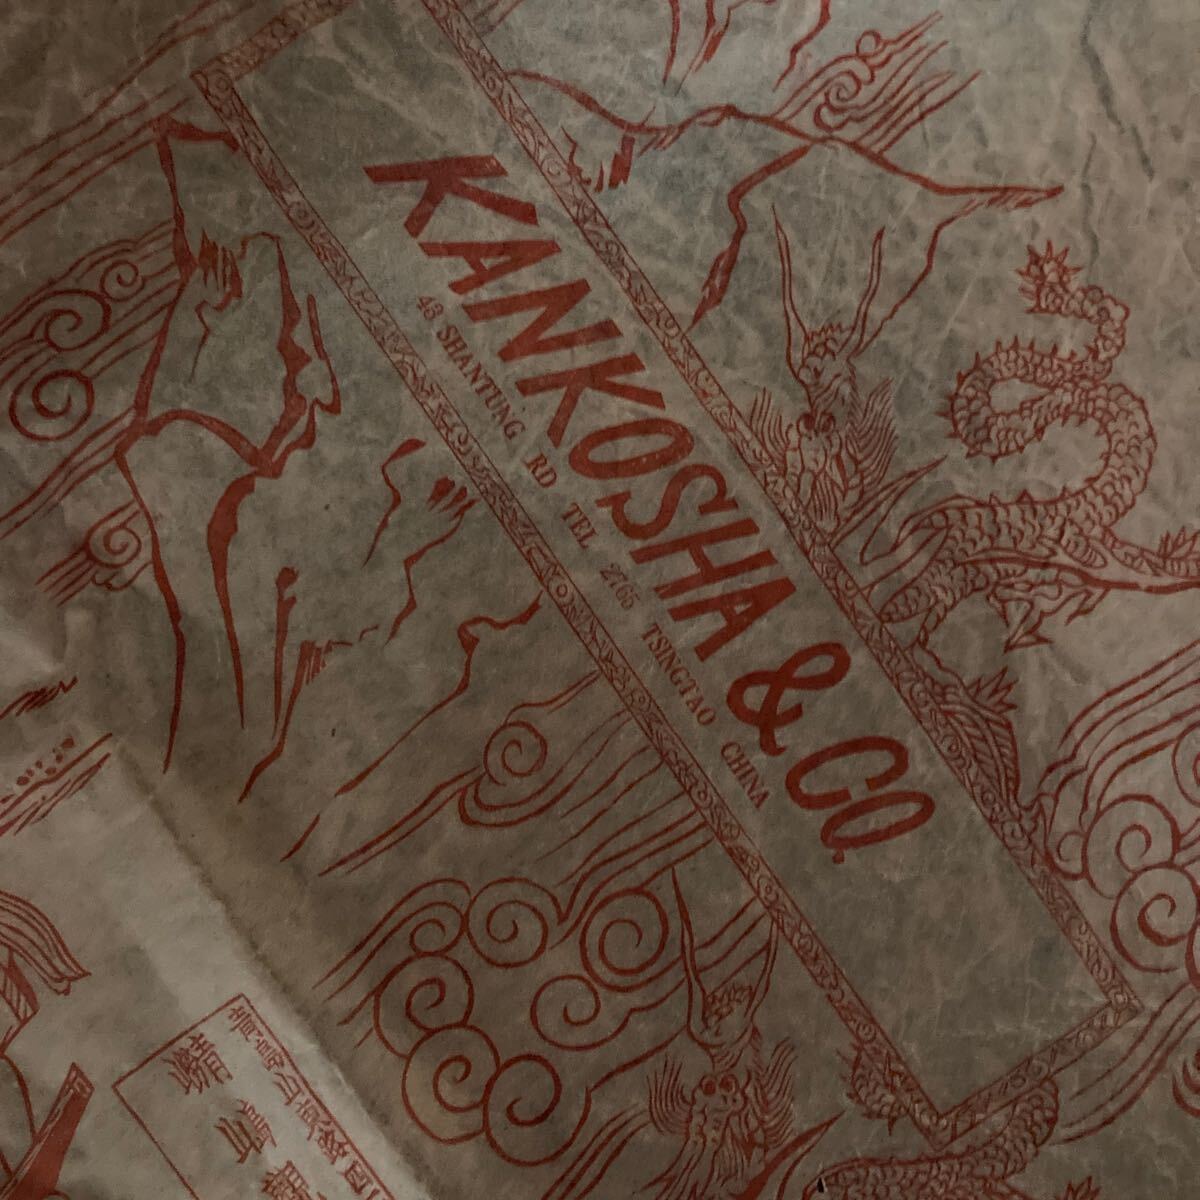 包装紙 観光社 青島 中国 ラベル レッテル 宣伝 広告 明治 大正 戦前 古い包装紙 昭和レトロ雑貨の画像6